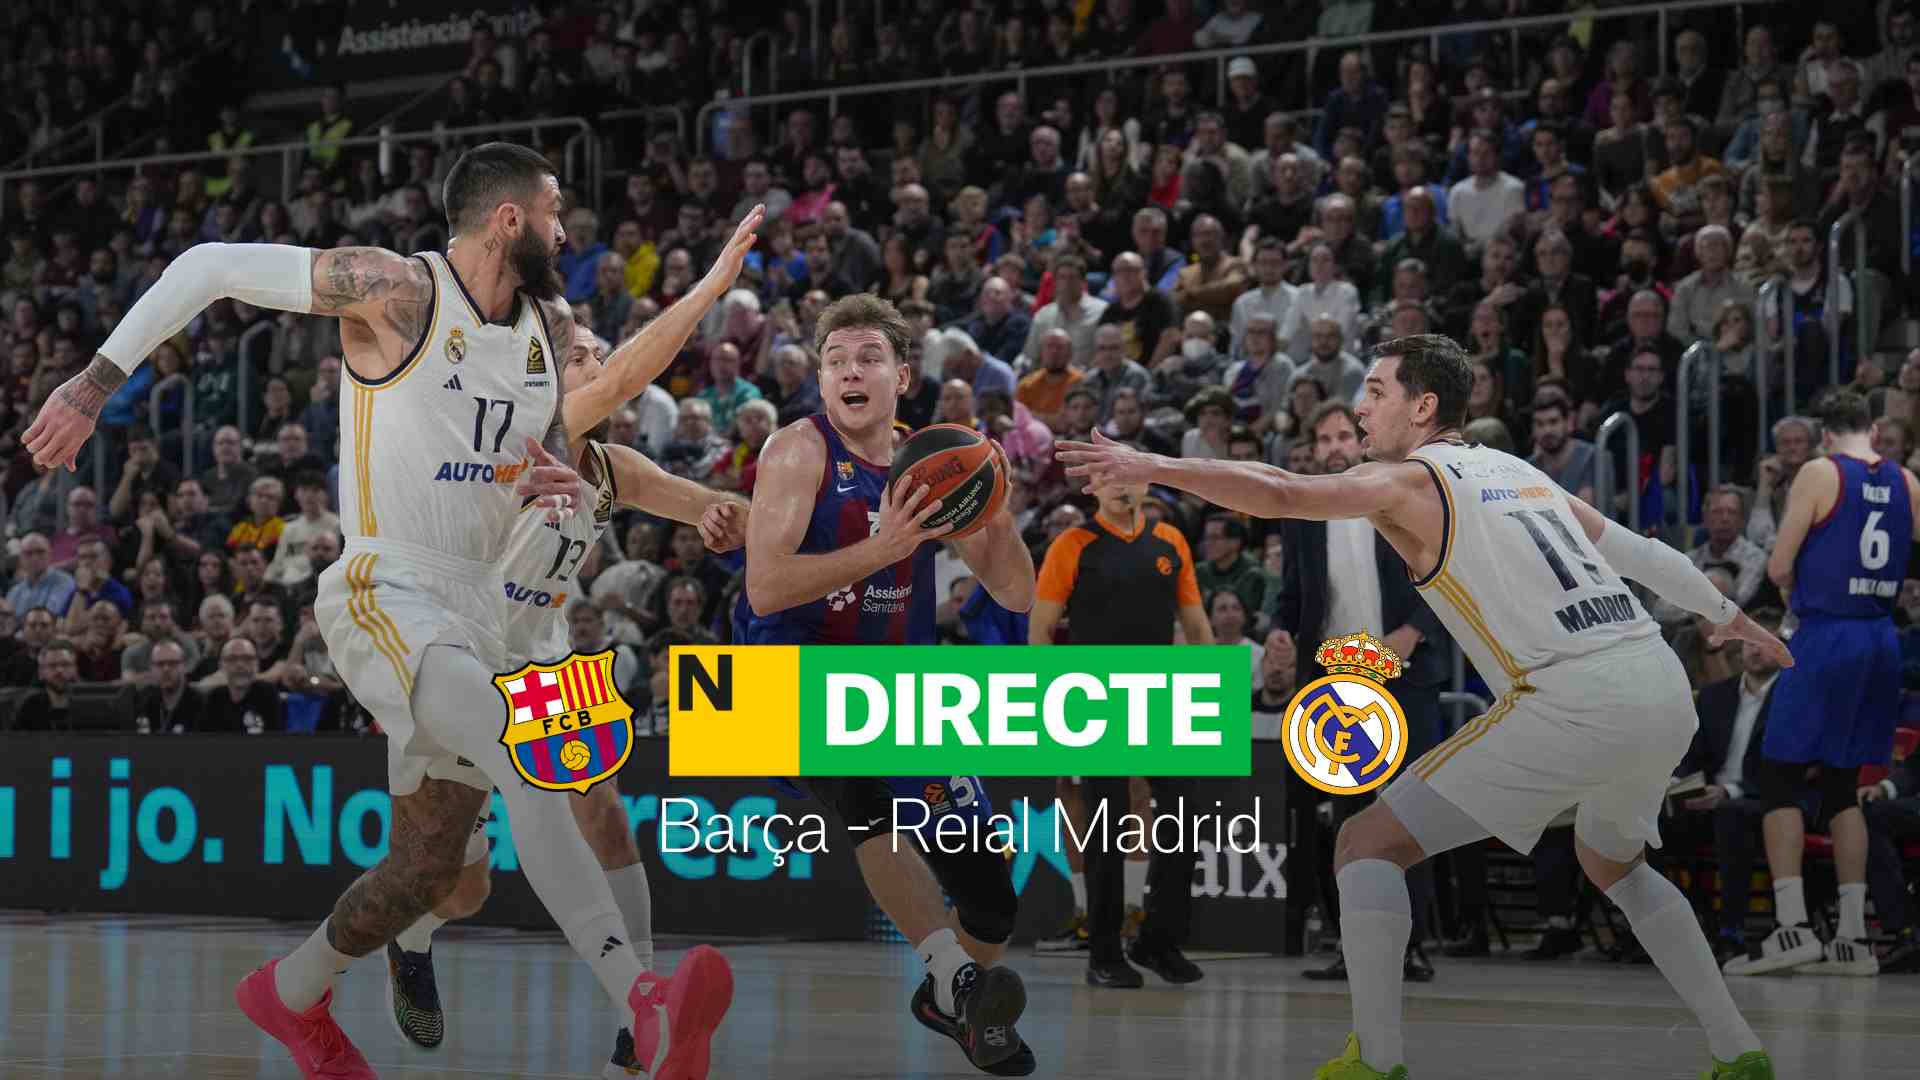 Barça - Reial Madrid de la Lliga Endesa, DIRECTE |Resultat i resum